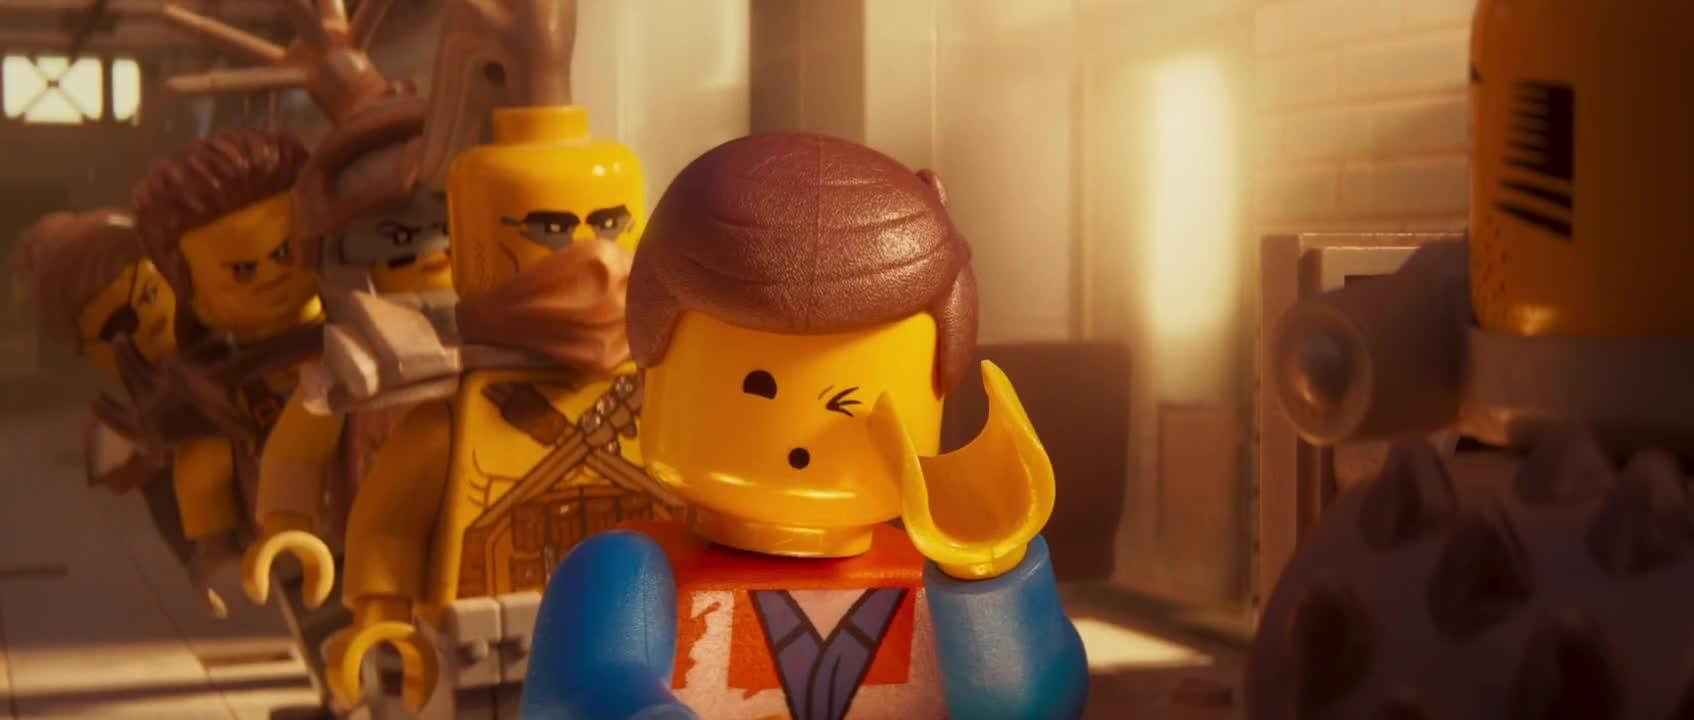 Лего Фильм-2